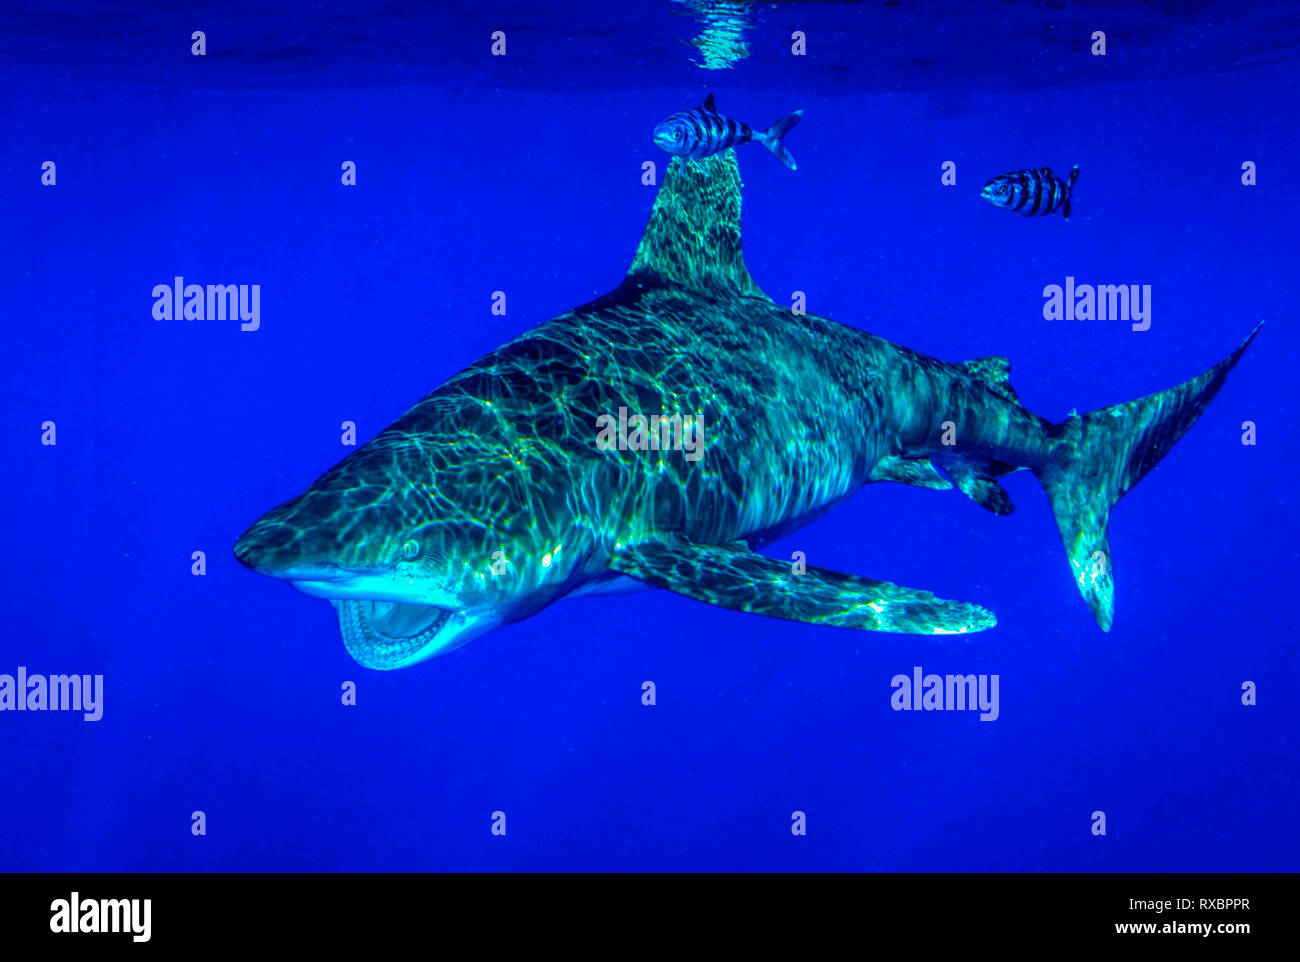 Oceanic Weißspitzen Hai, Carcharhinus Longimanus, ungefähr 7 Meilen offshore, Cat Island, Karibik, Bahamas, kritisch gefährdet im Nordwesten und Western Central Atlantic Ocean Stockfoto